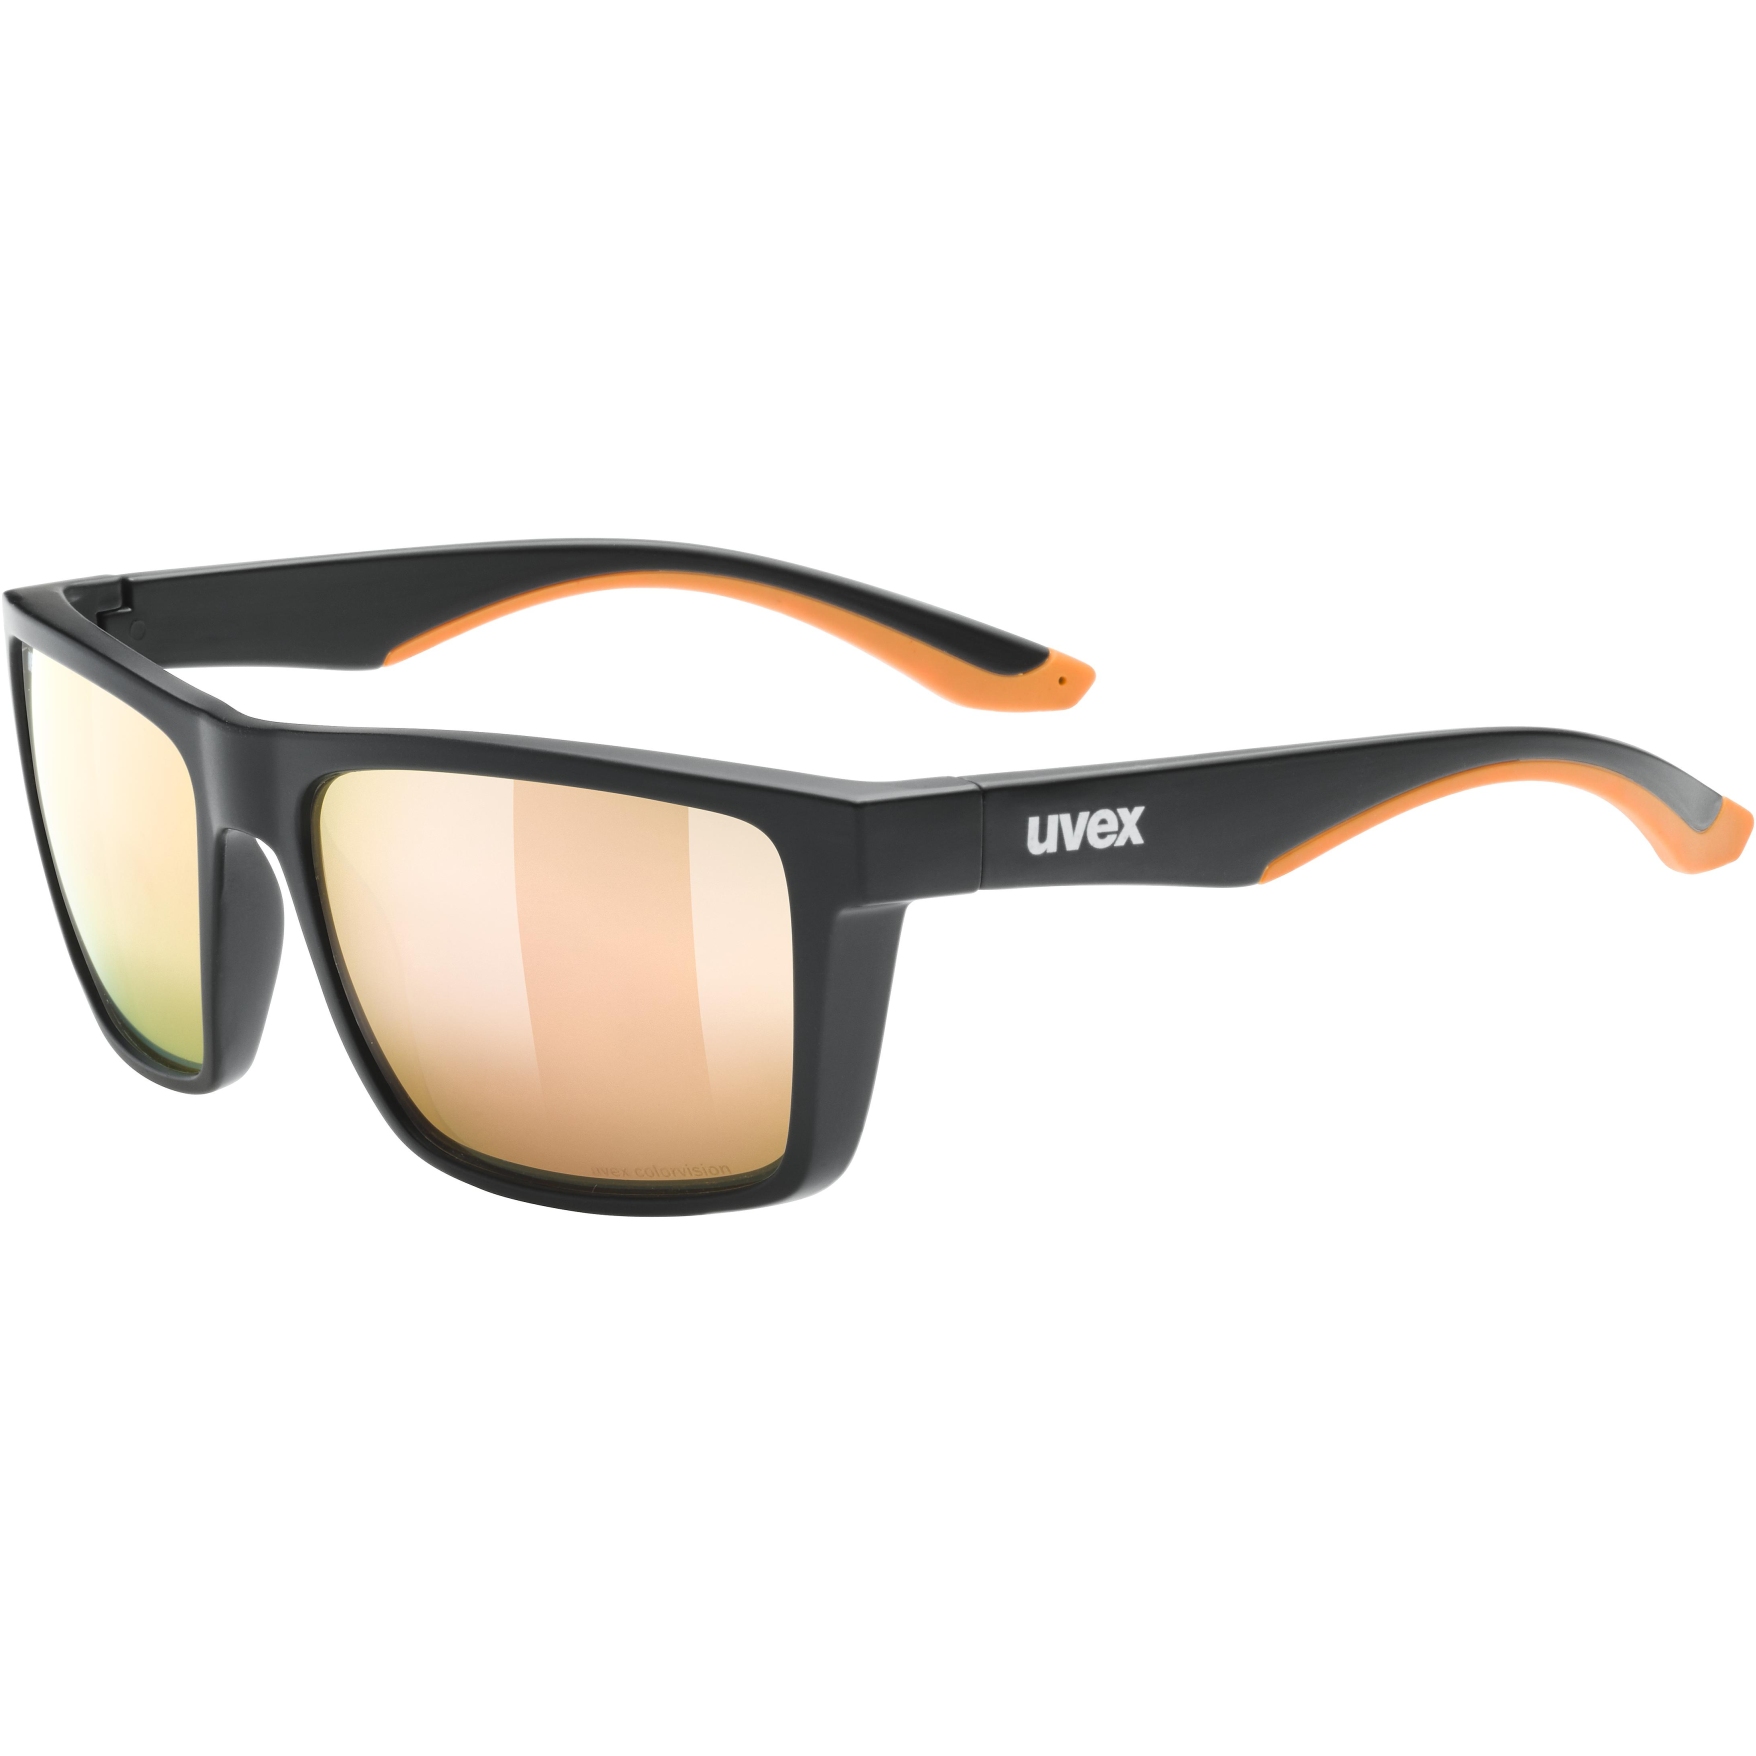 Produktbild von Uvex lgl 50 CV Brille - black mat/colorvision mirror champagne